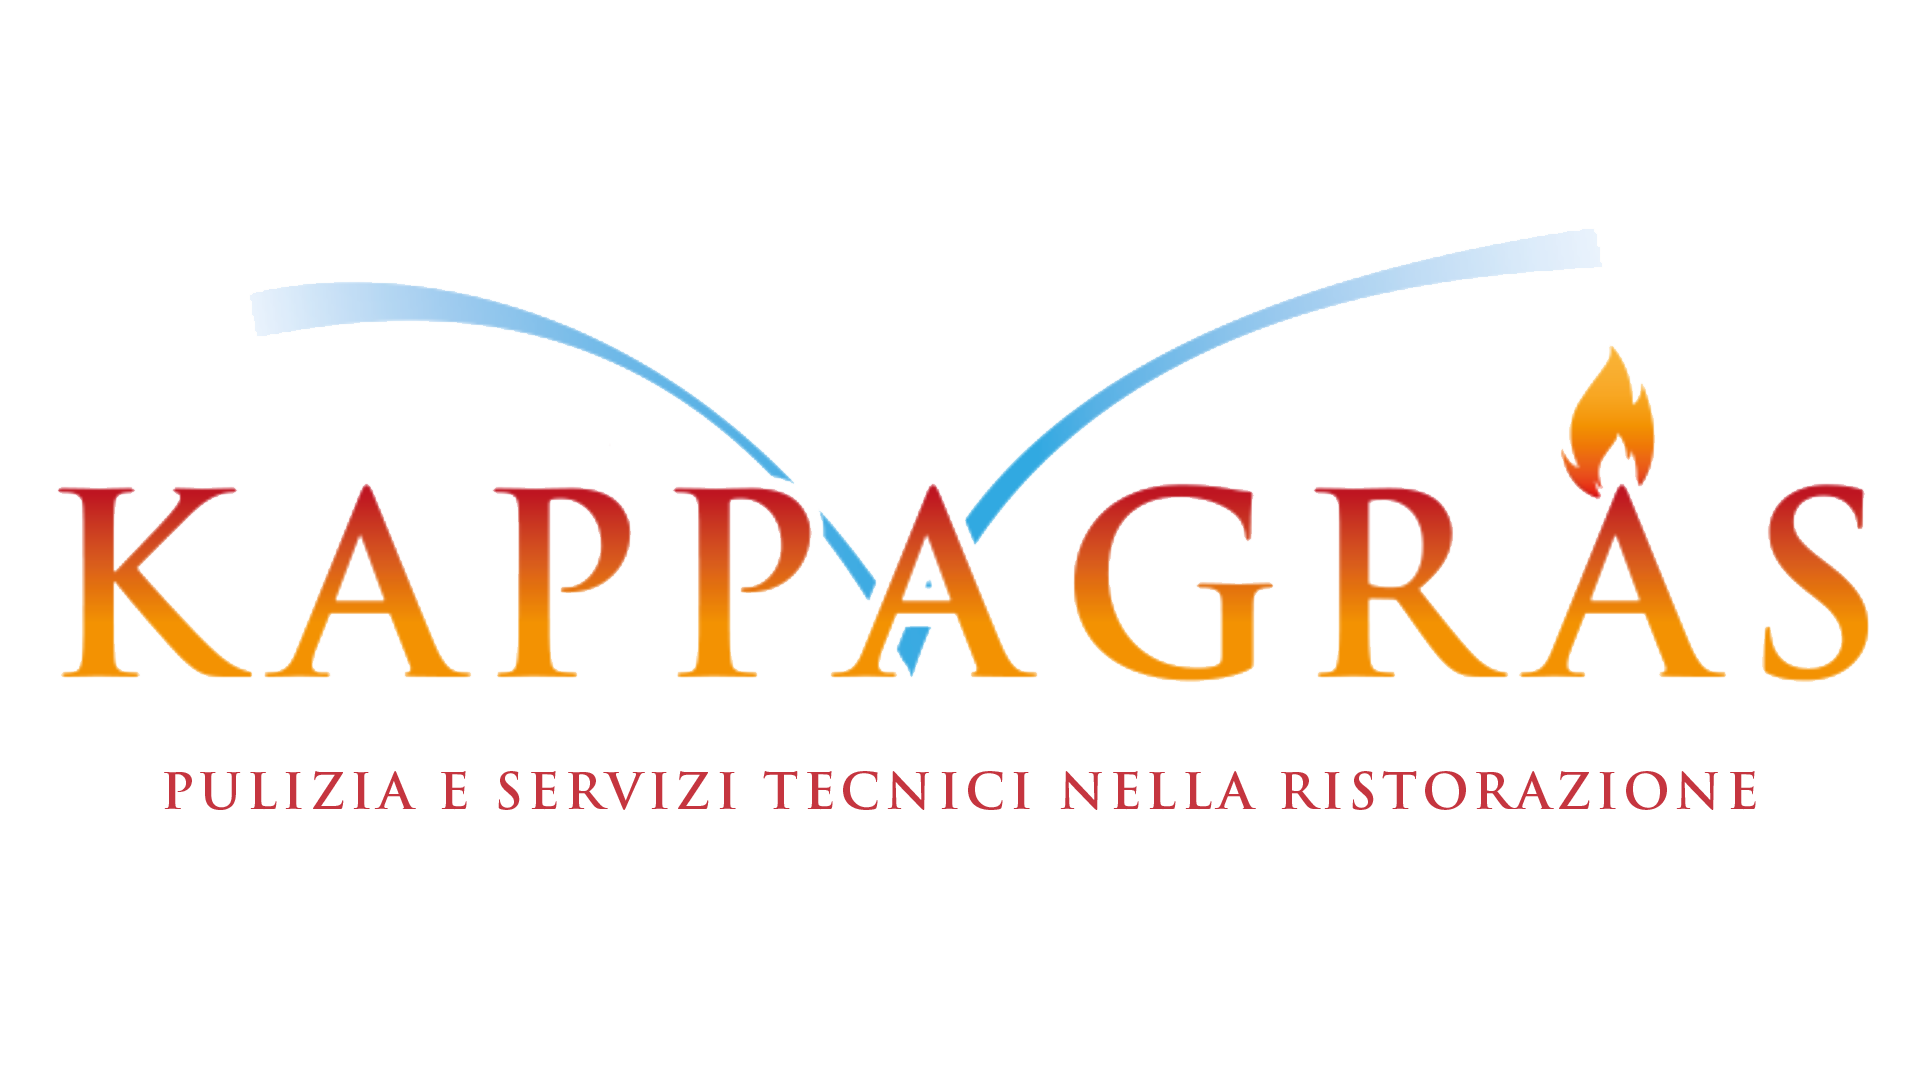 Kappagras.it - Pulizia e servizi tecnici per la ristorazione